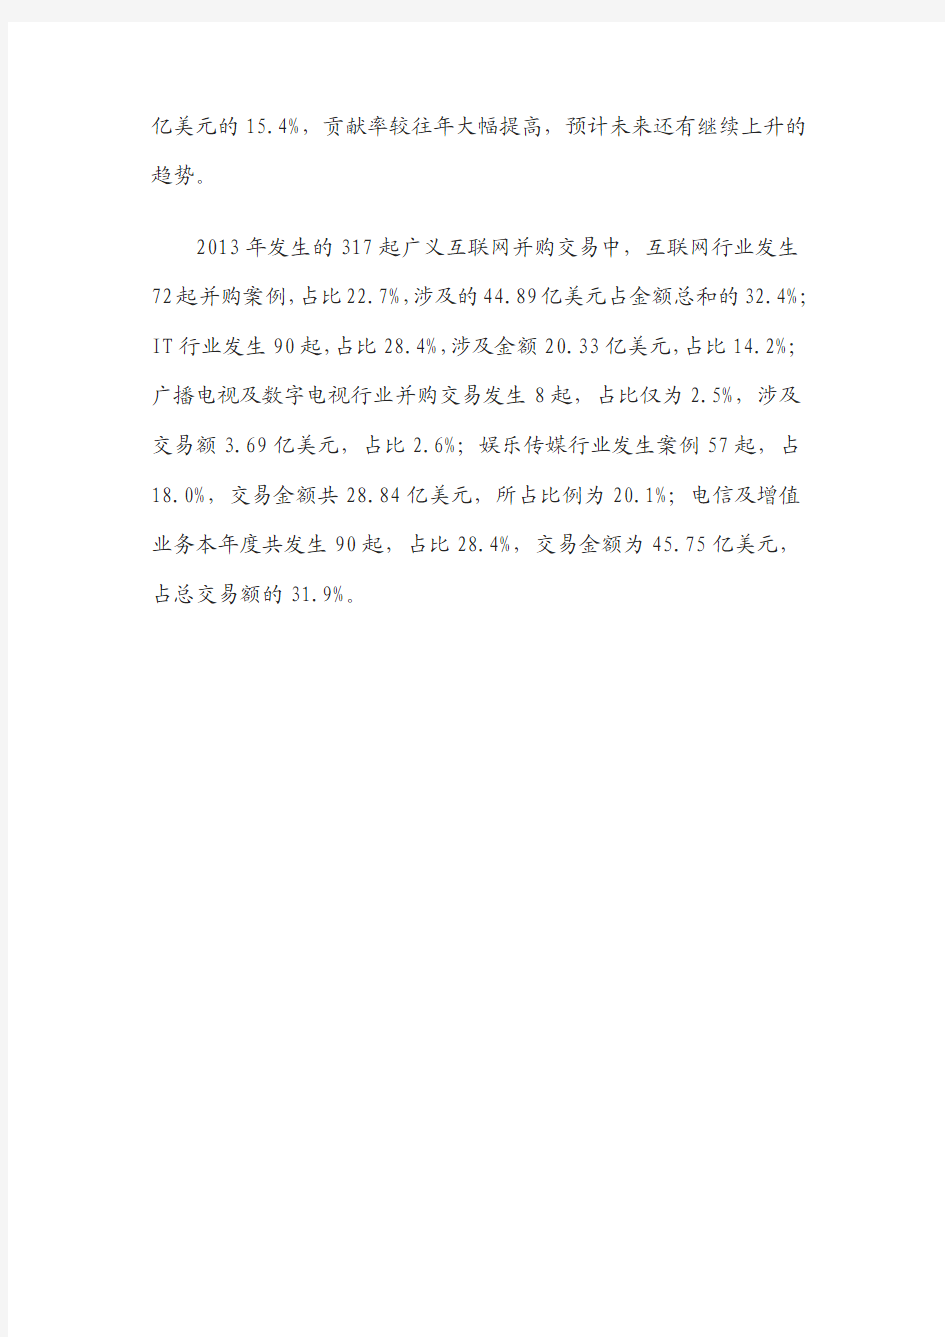 2014年中国互联网行业并购专题研究报告简版